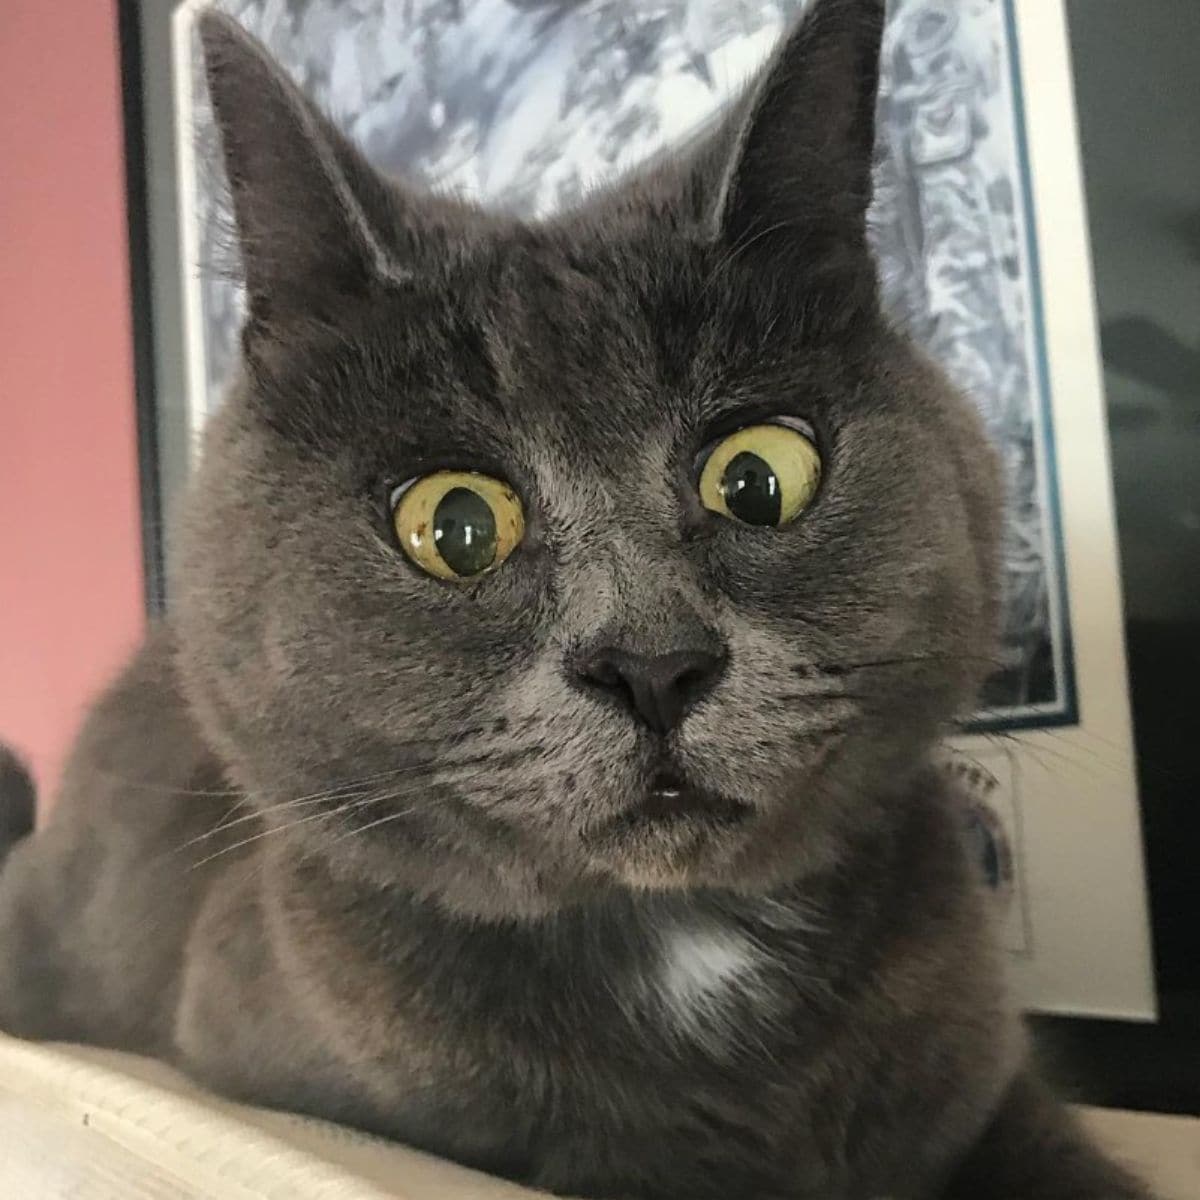 close-up photo of surprised cat